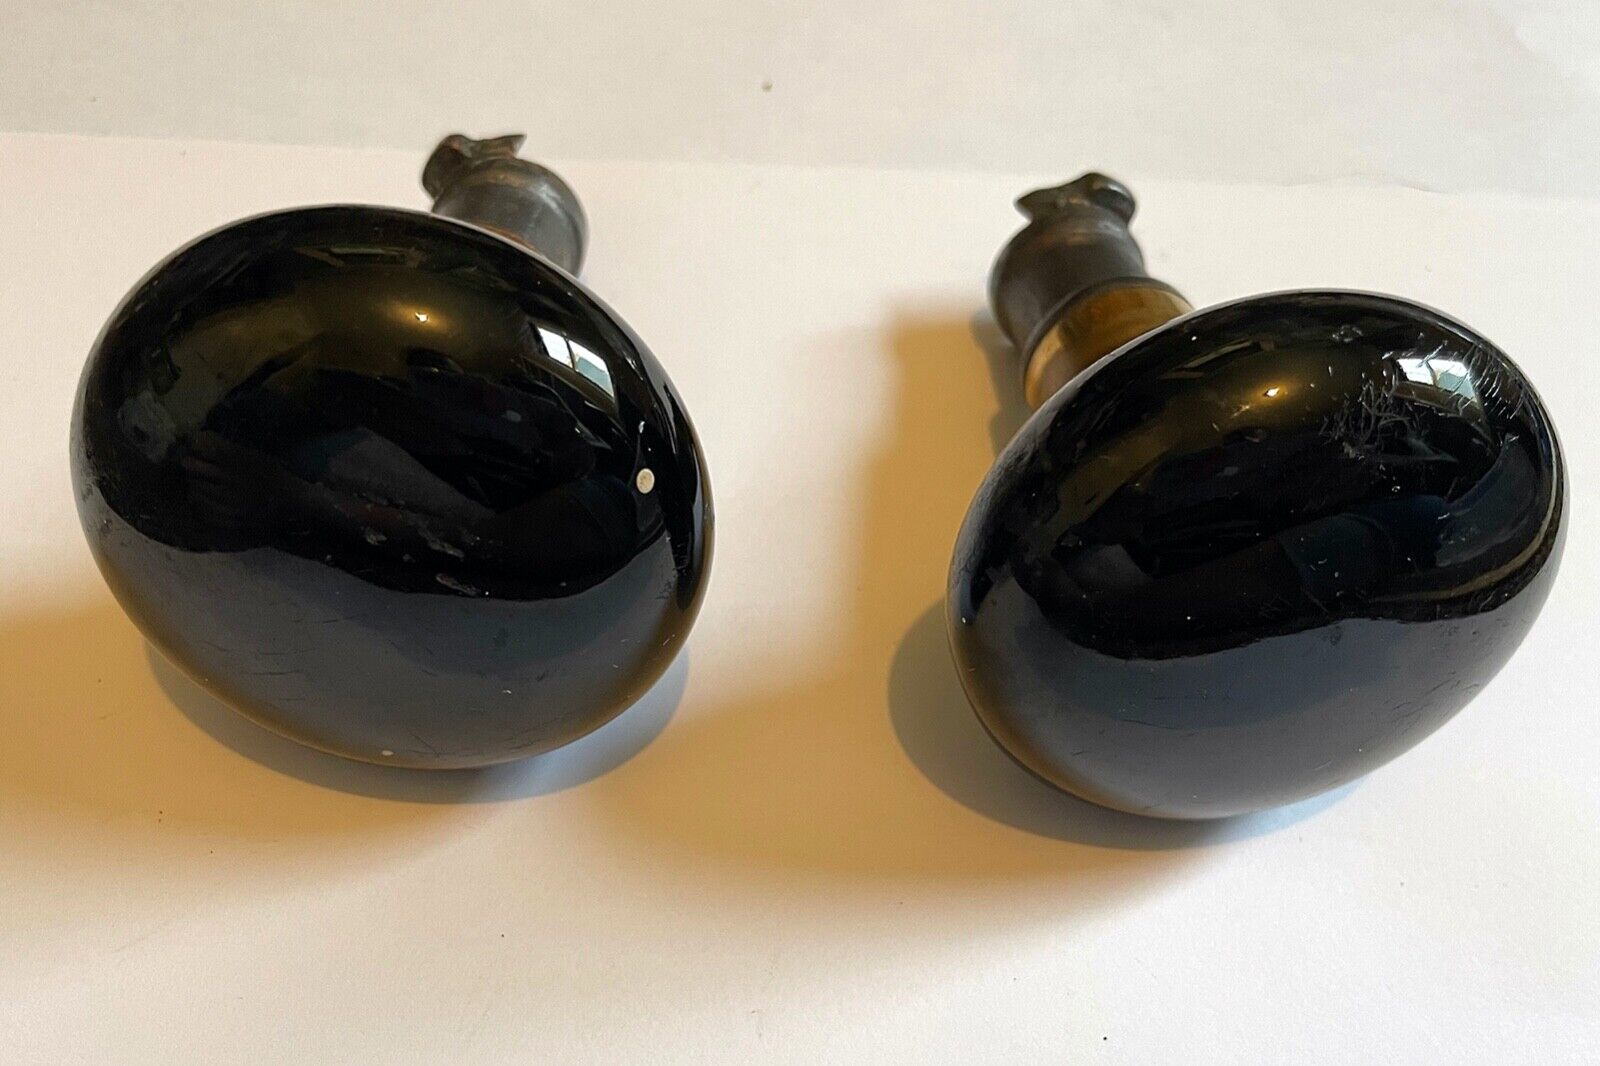 Antique black enamel and brass doorknob door knob sets (6 total knobs)